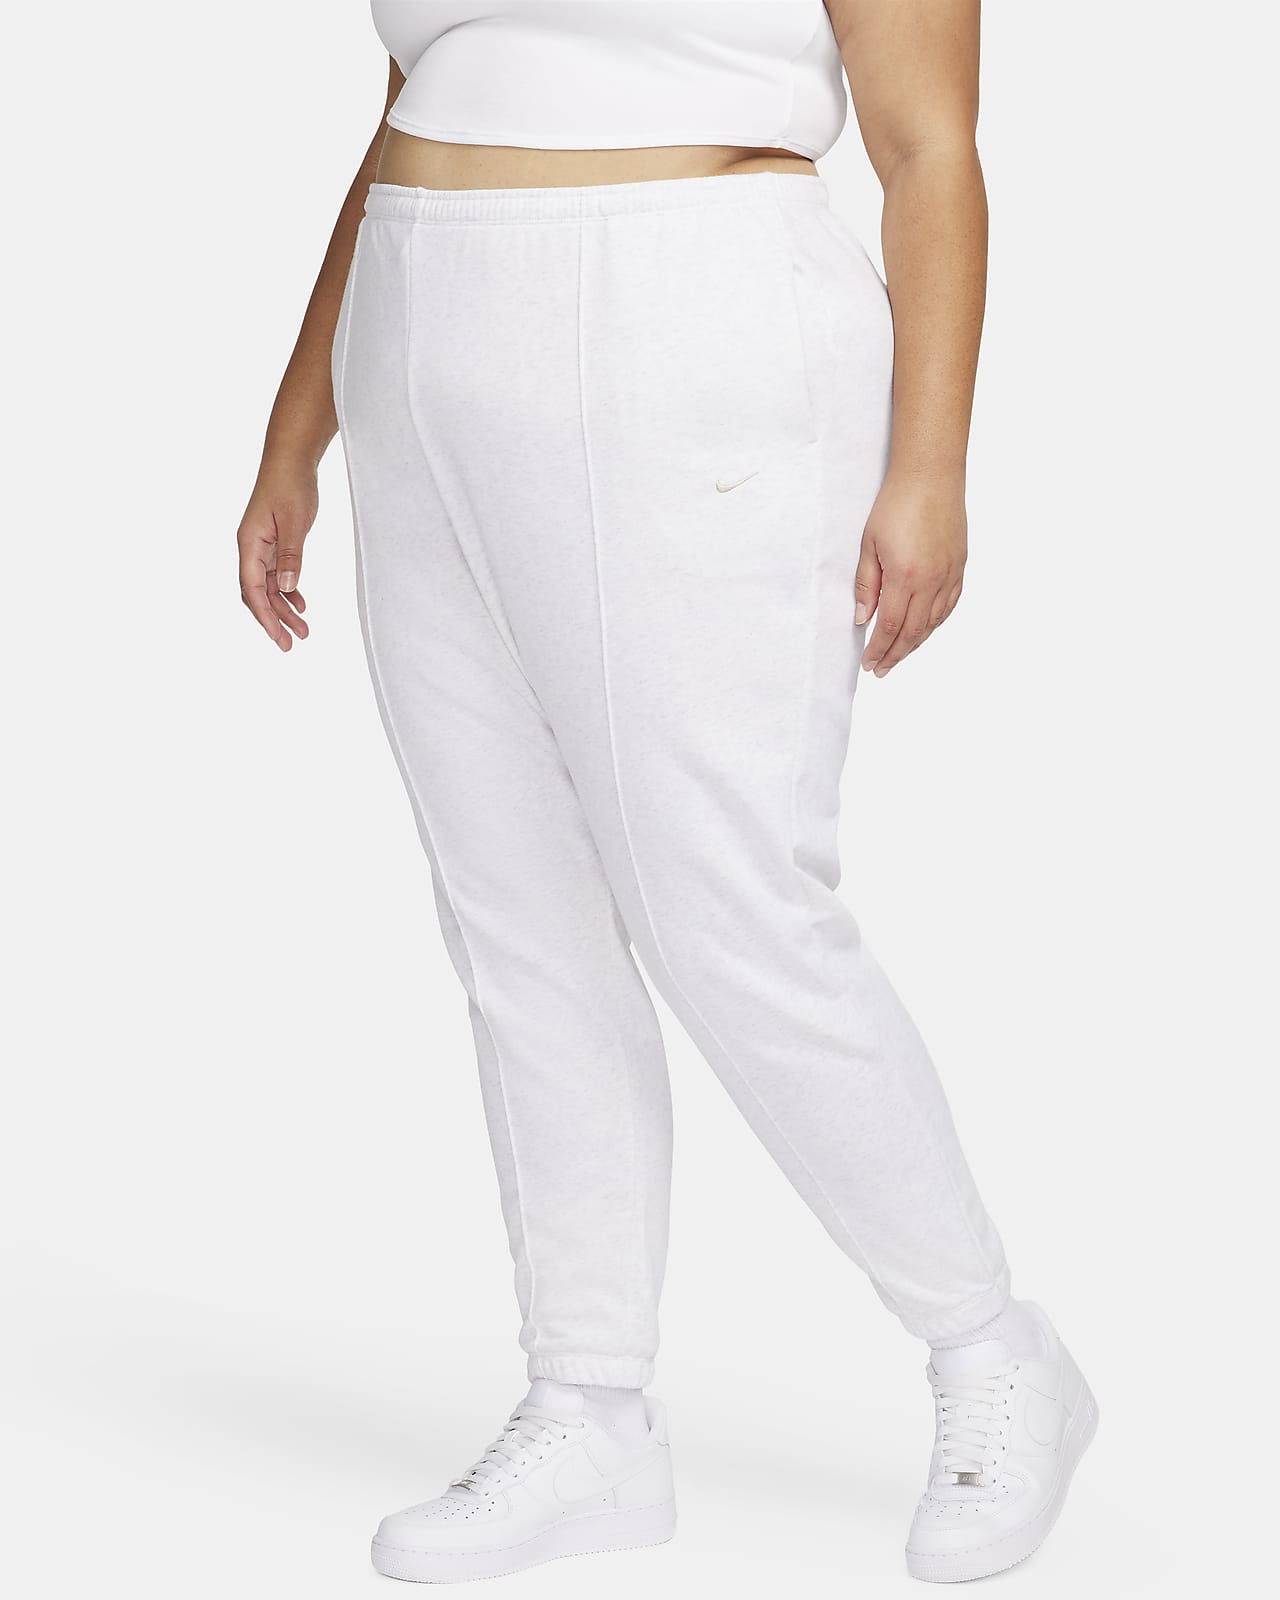 Women White Pants, Explore our New Arrivals